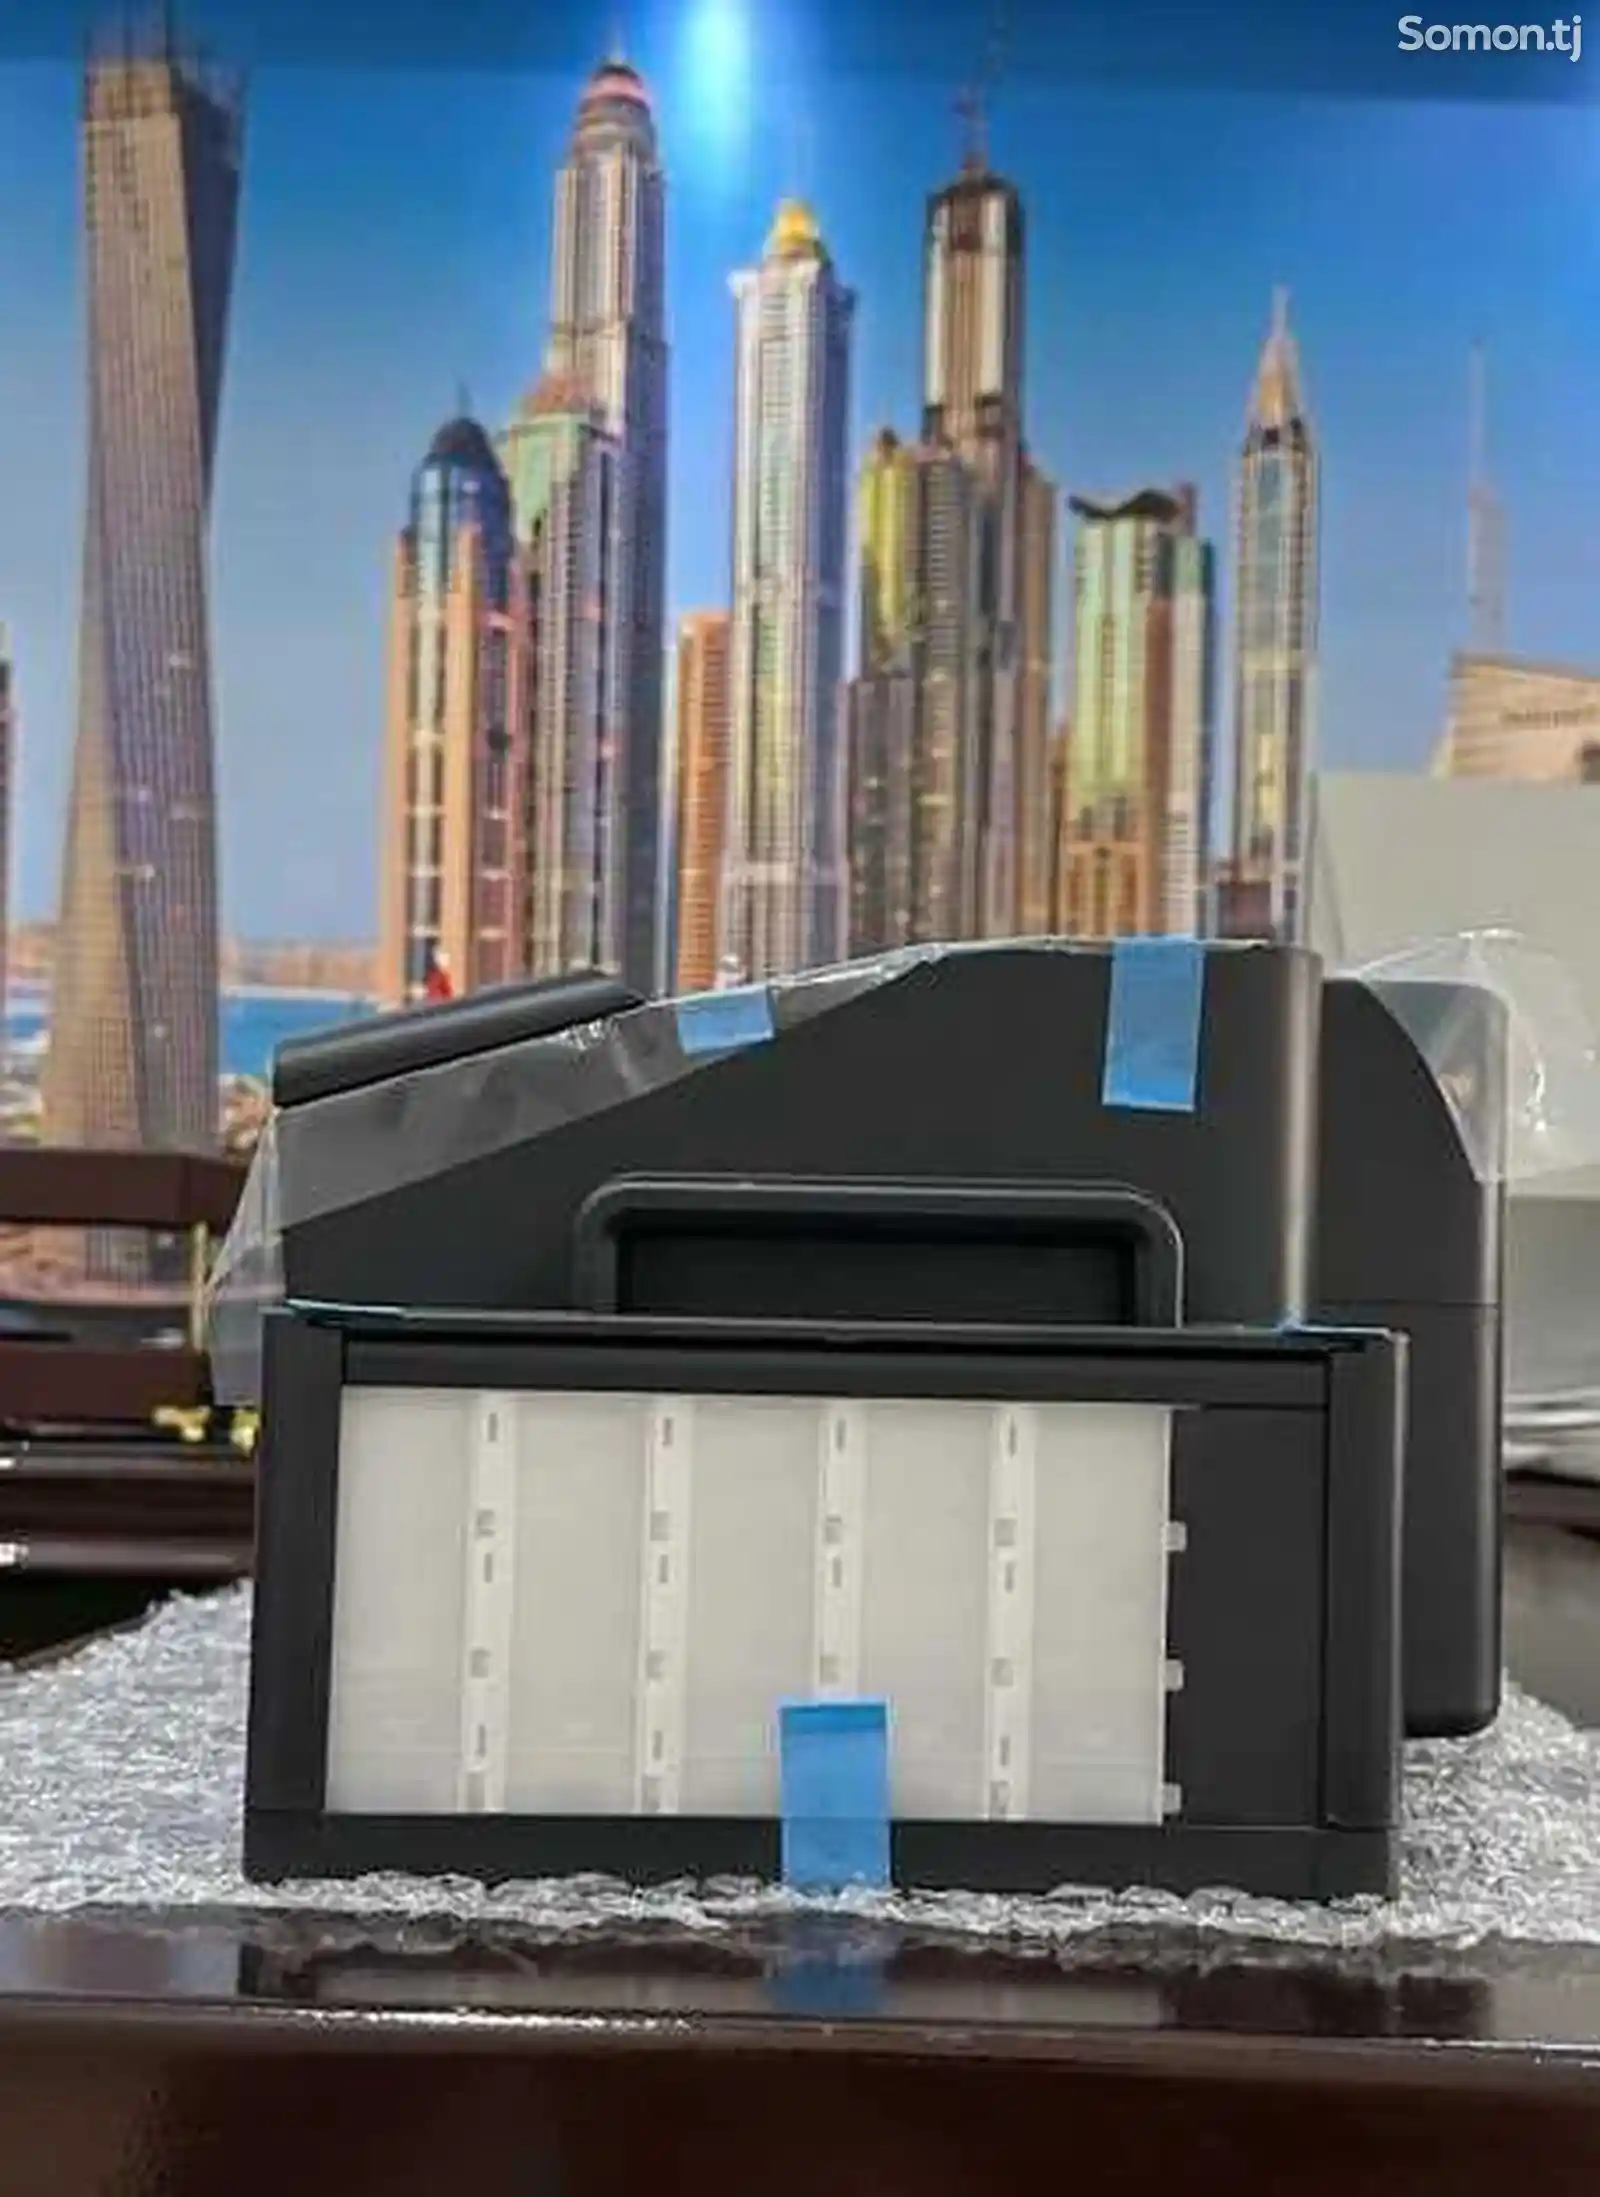 Принтер epson L1300 цветной, формат печати А3+-4